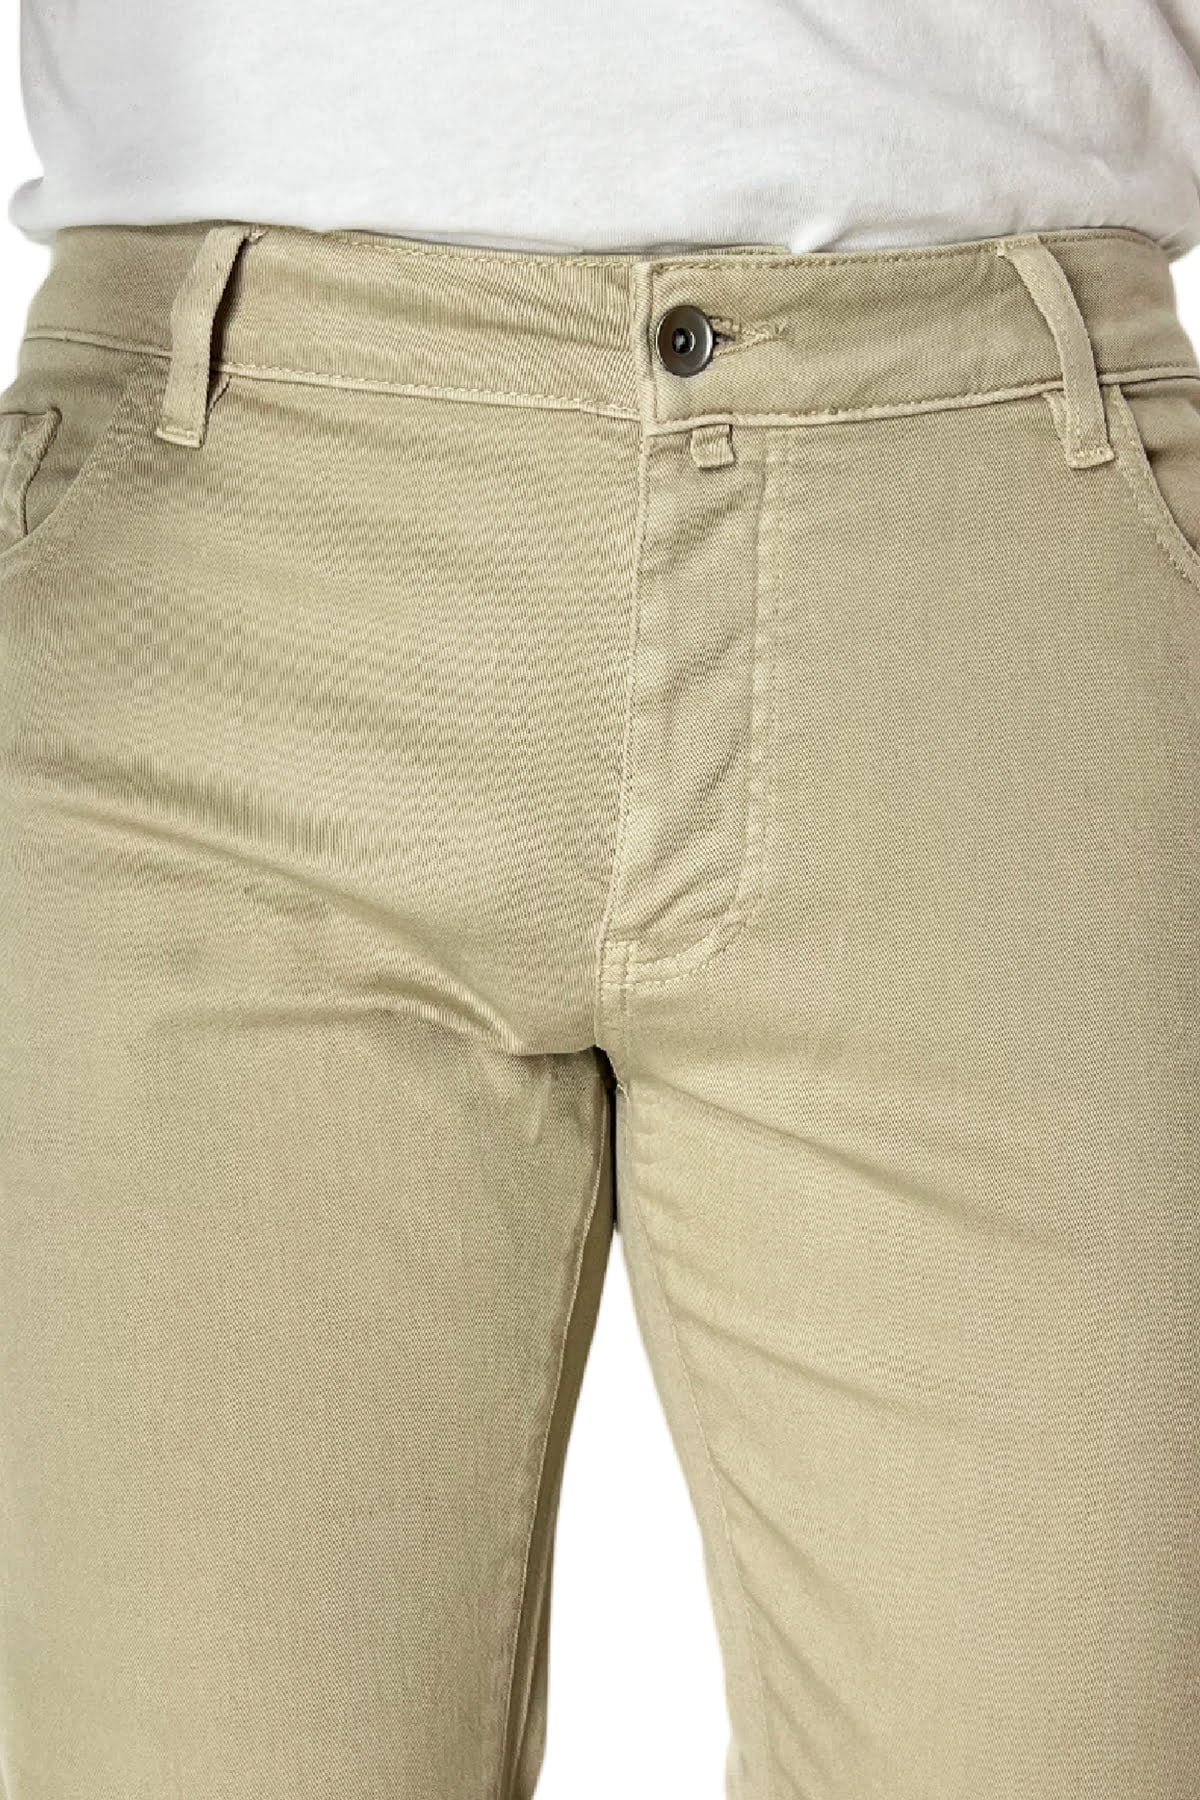 Jeans uomo beige tinta unita modello 5 tasche slim fit estivo made in italy